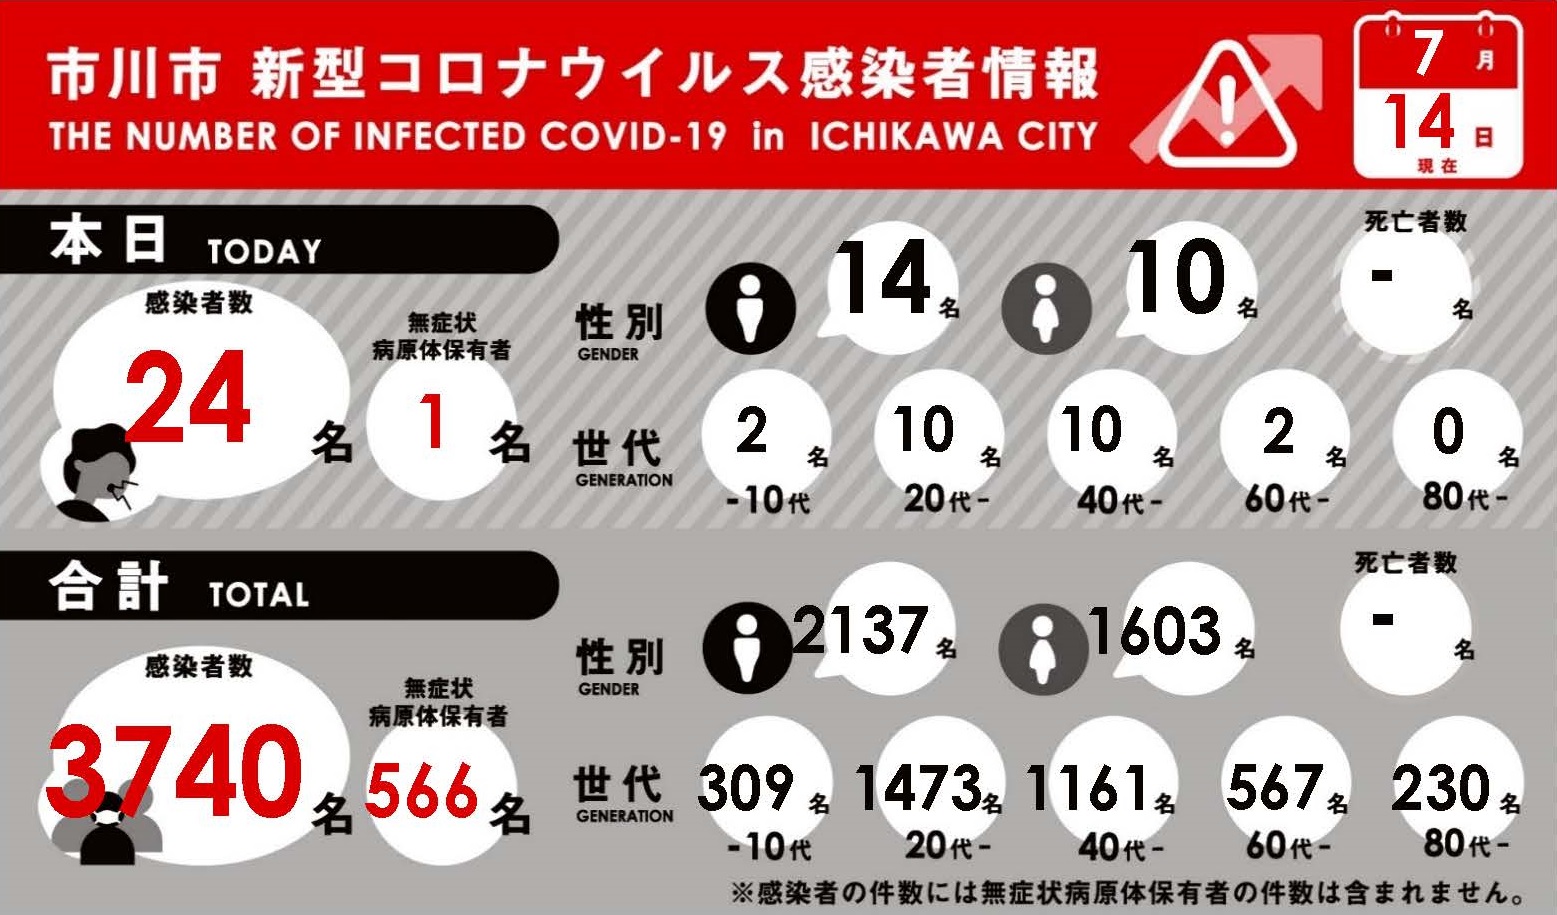 者 市 数 神奈川 県 藤沢 感染 コロナ 神奈川県内の新型コロナウイルス感染症 (COVID